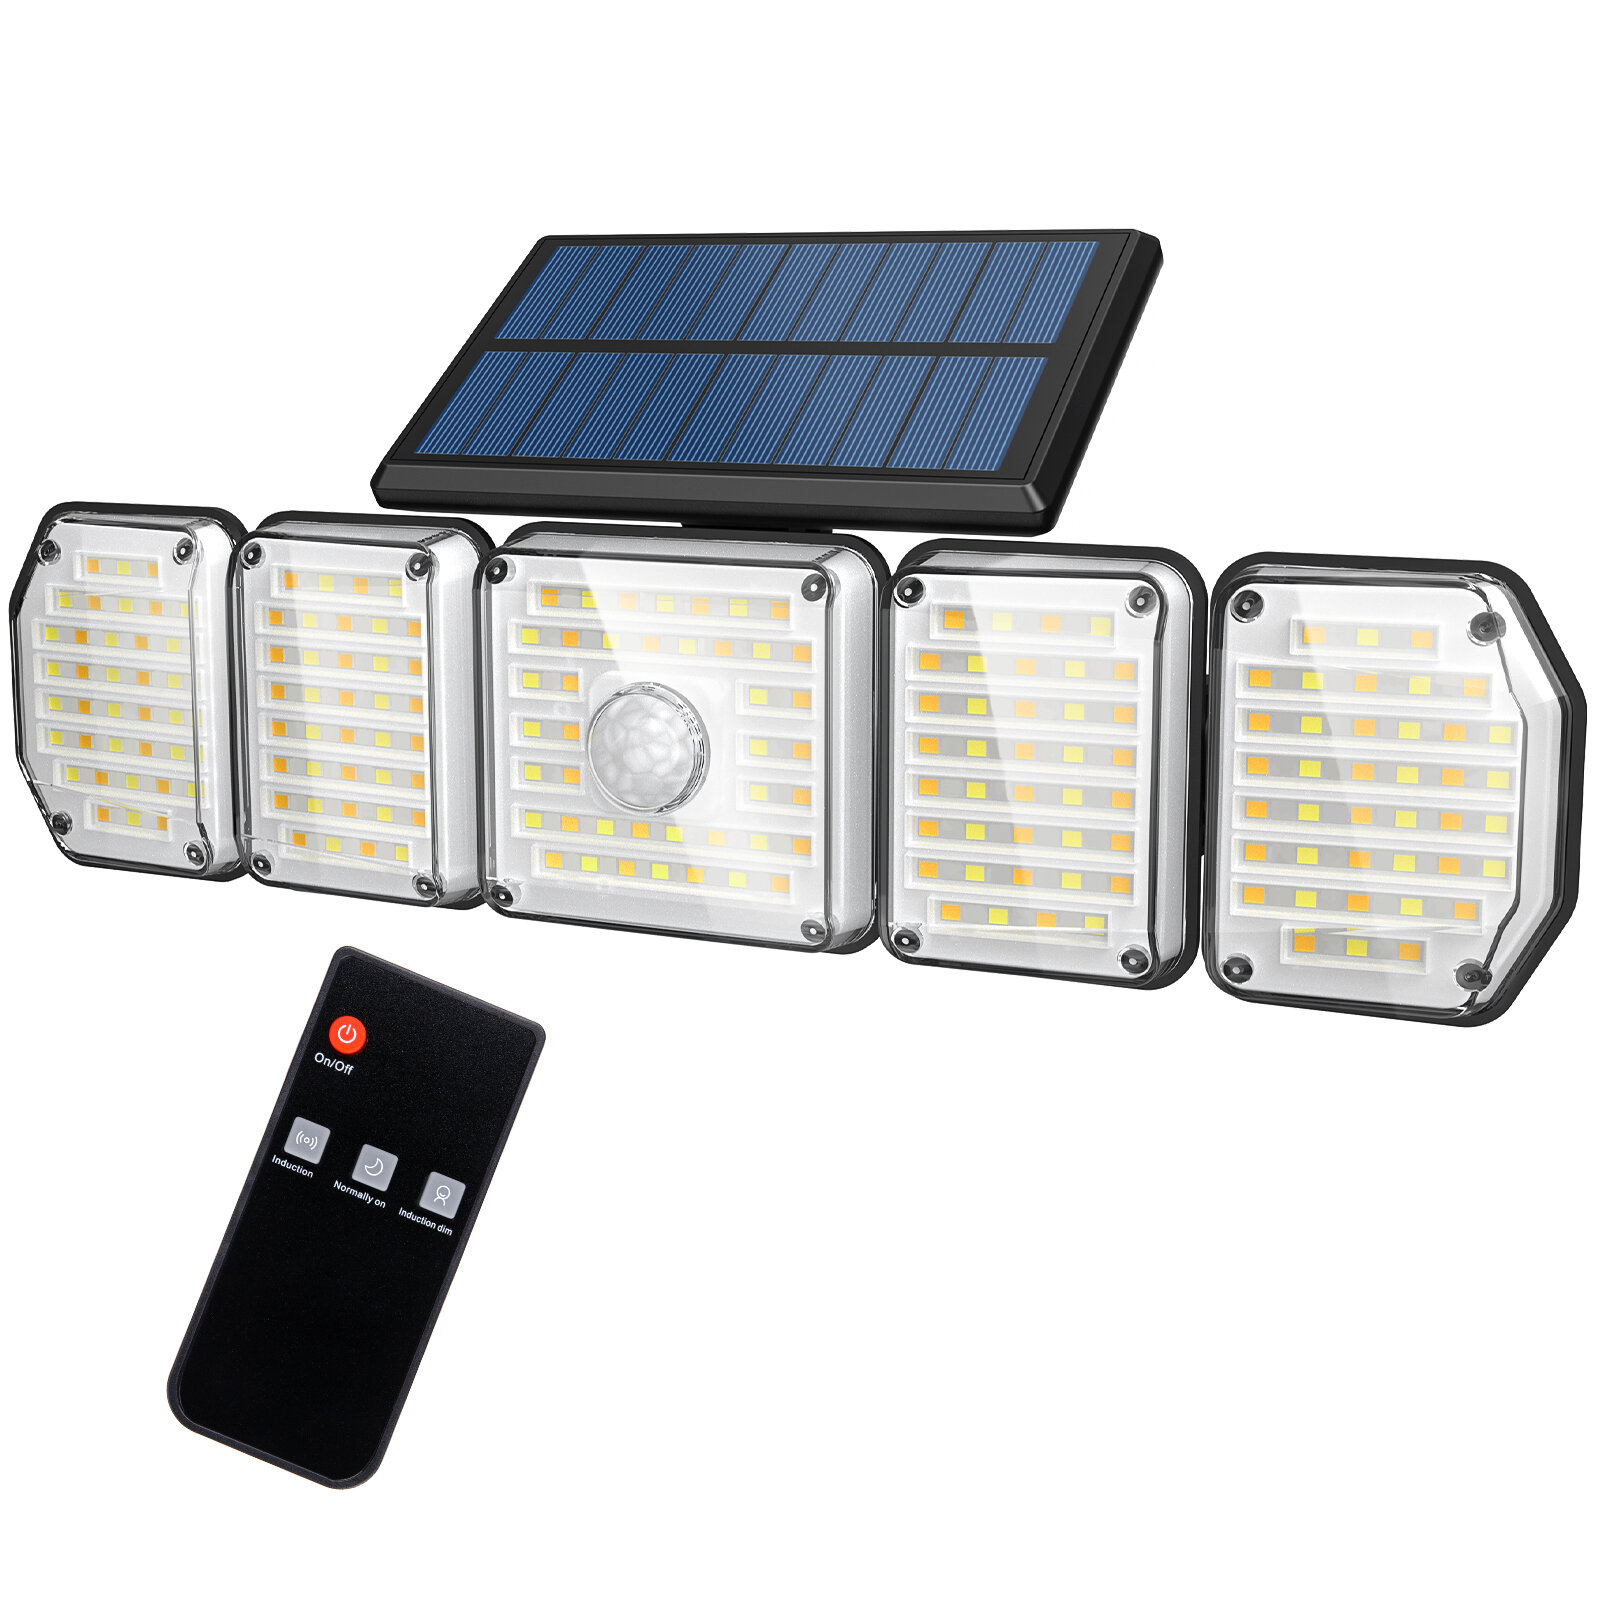 Lampka solarna Somoreal SM-OLT2 z EU za $19.99 / ~83zł